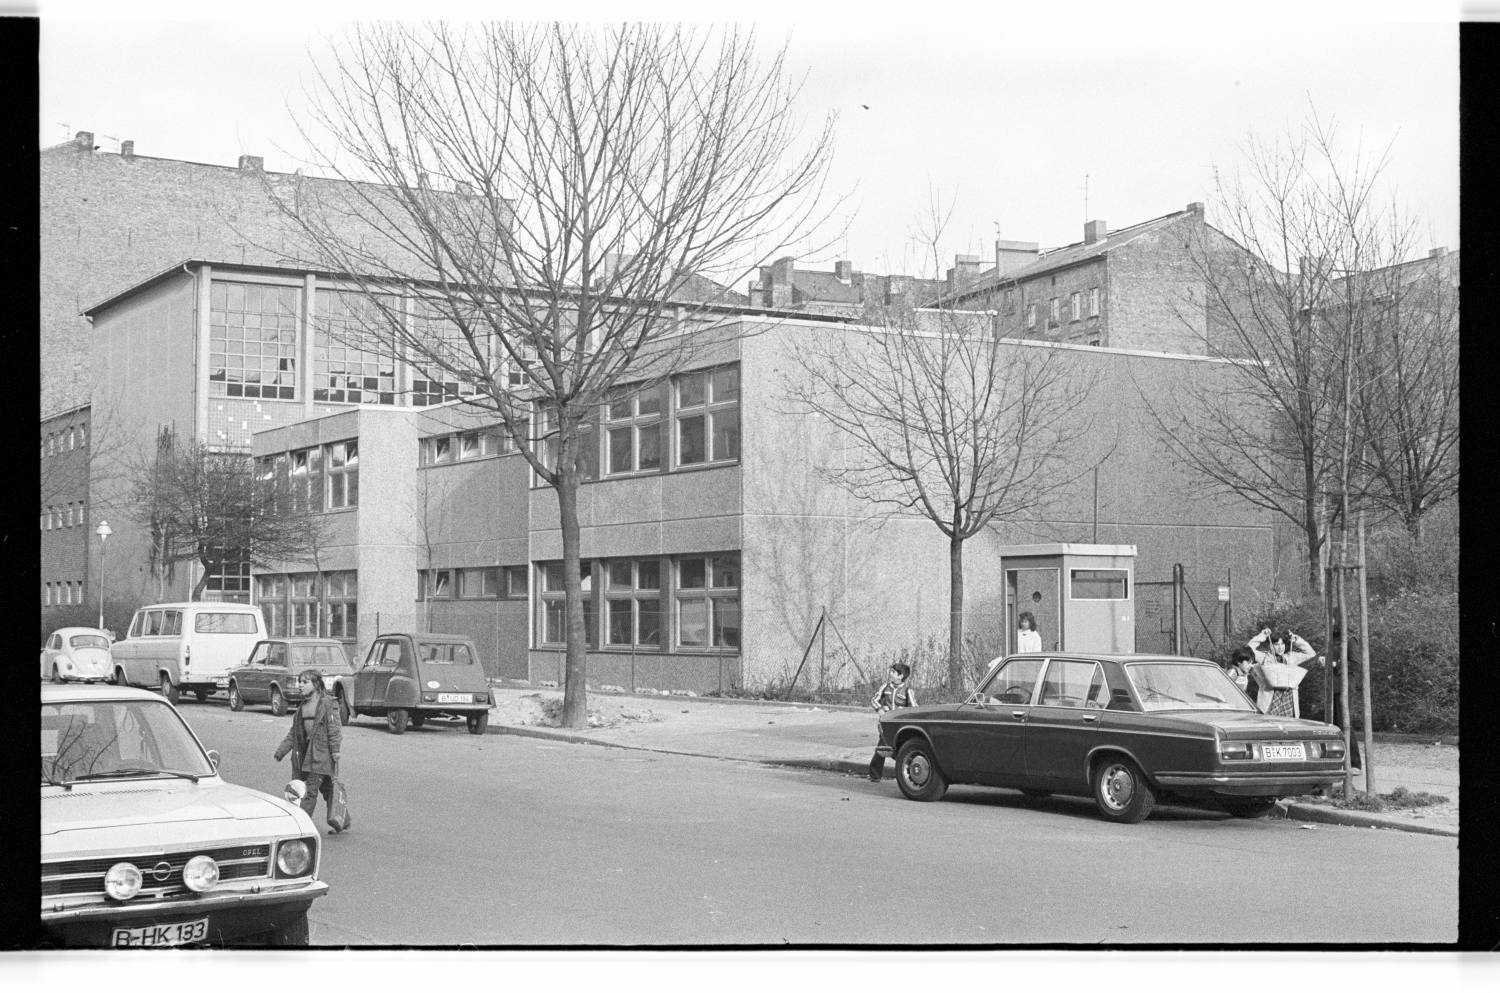 Kleinbildnegative: Mobile Klassenräume, Steinmetzstraße, Großgörschenstraße, 1978 (Museen Tempelhof-Schöneberg/Jürgen Henschel RR-F)